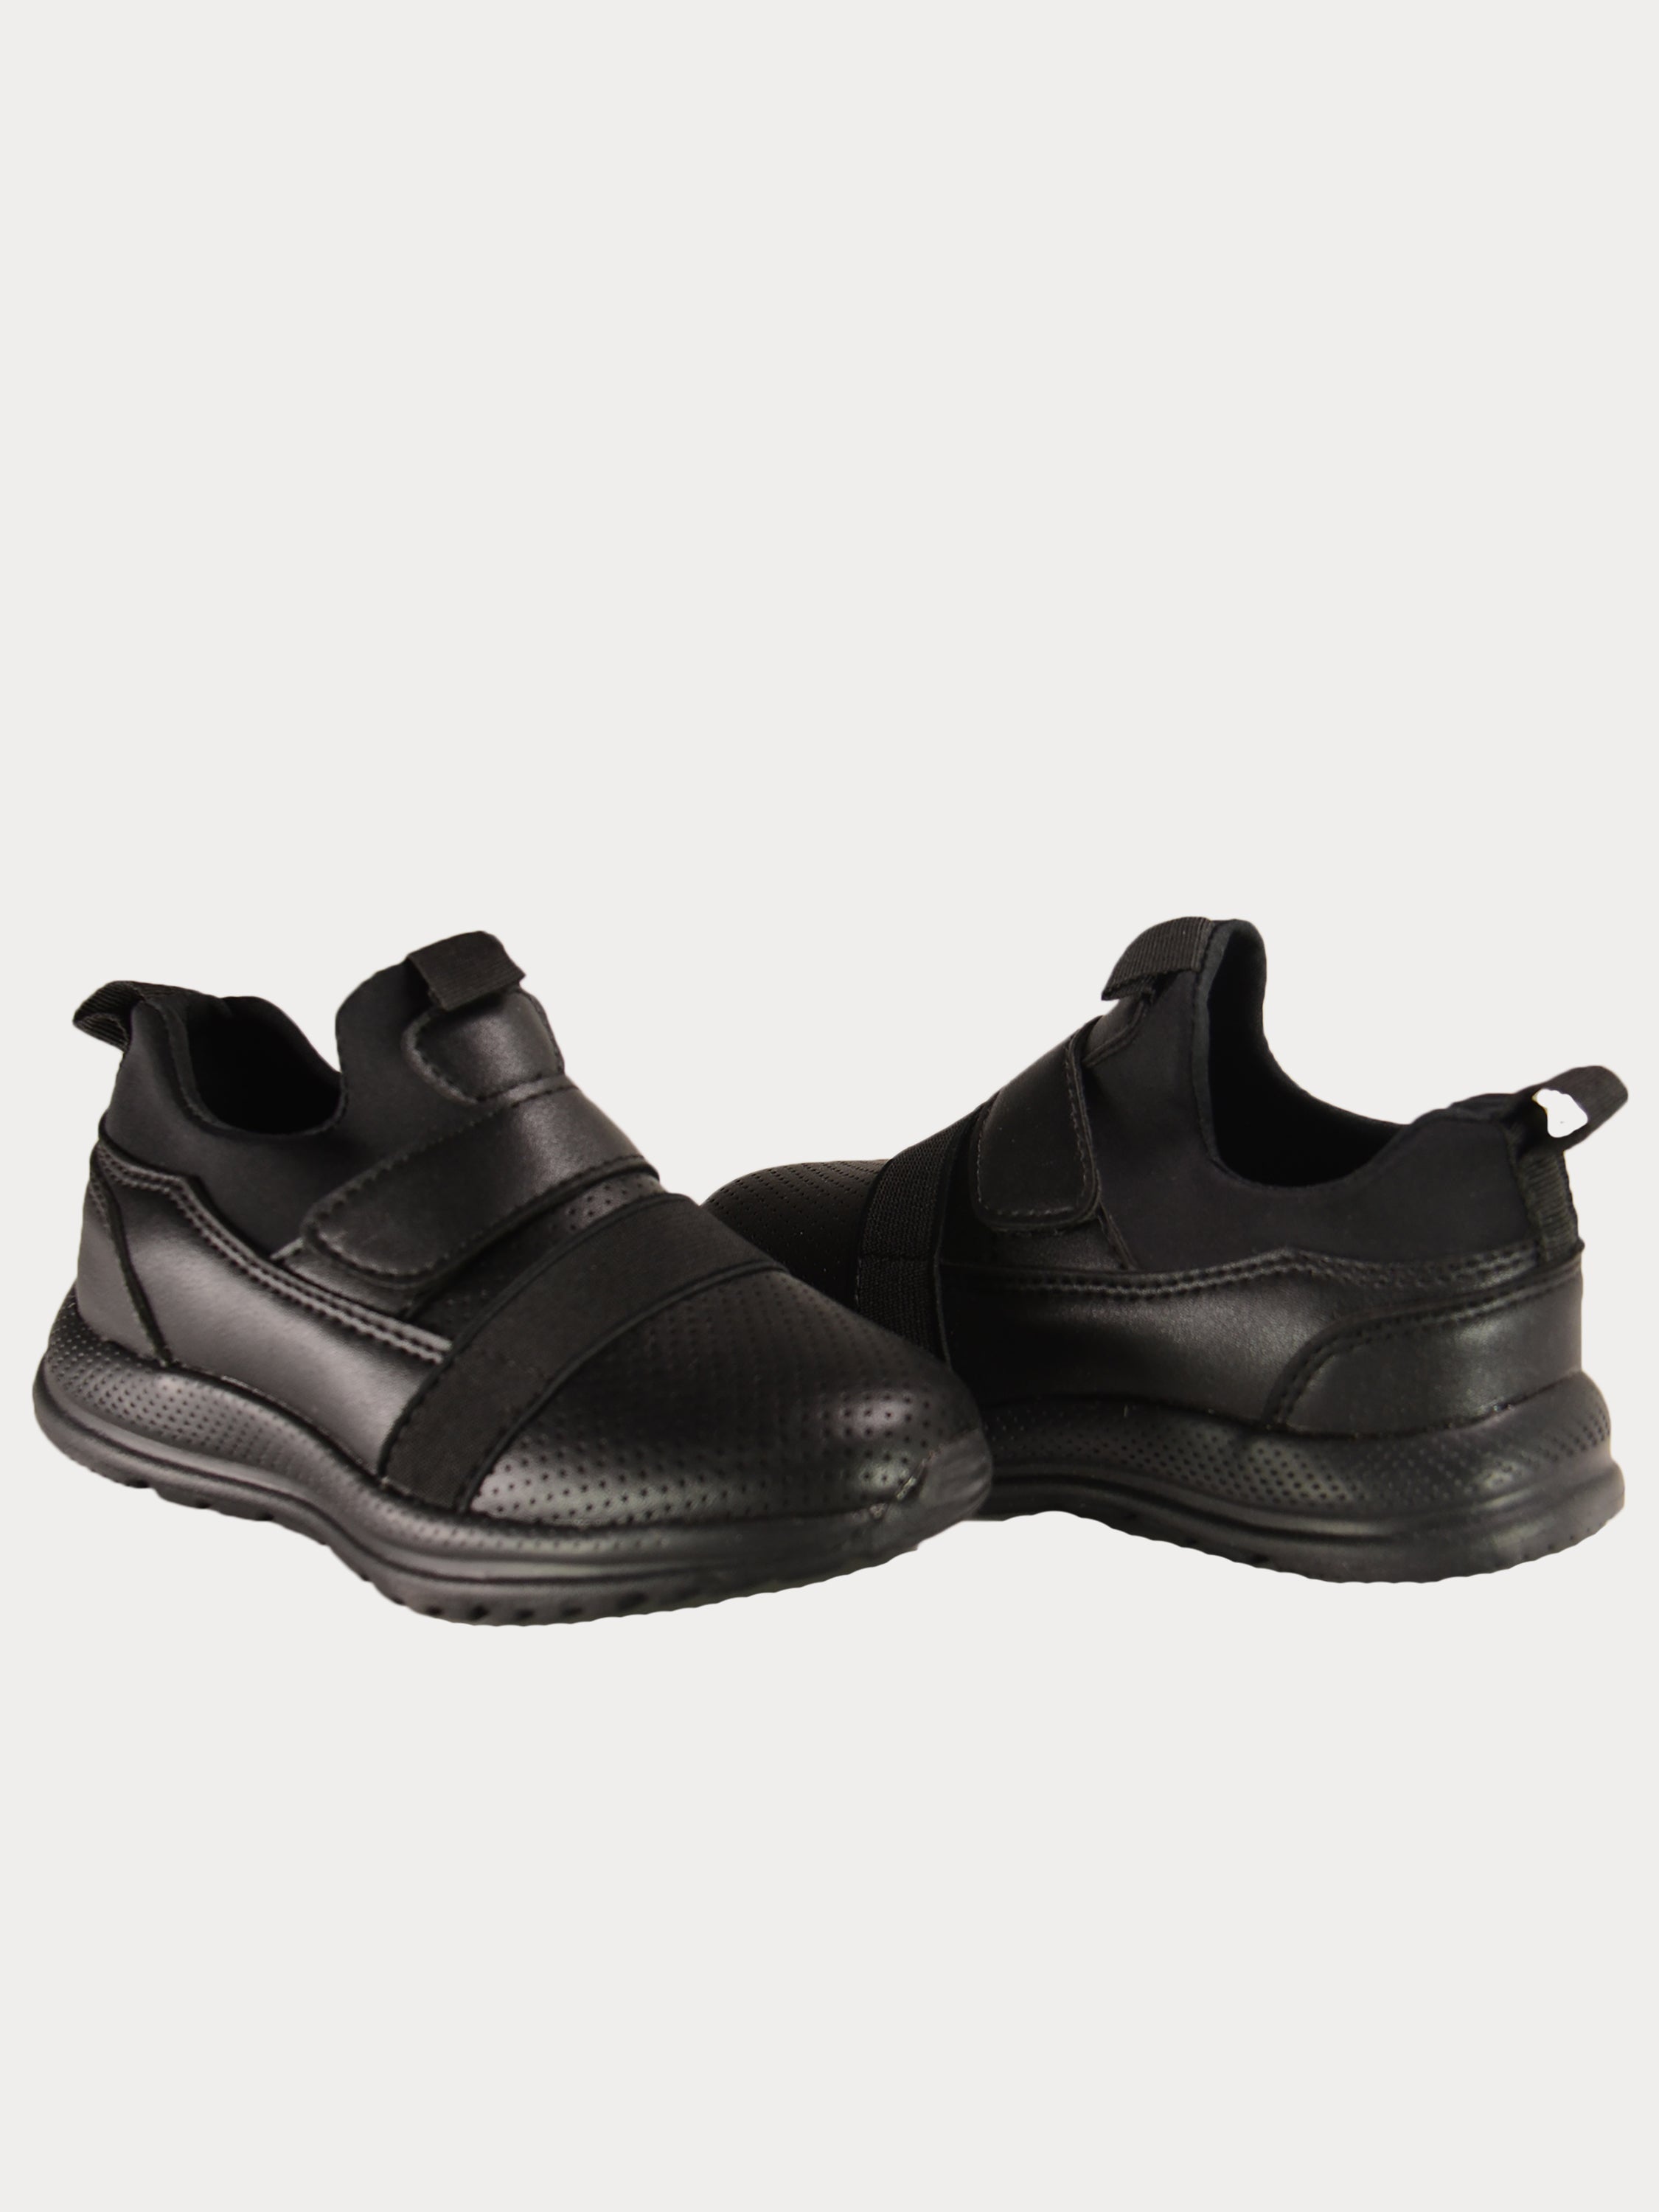 Tracker Boys School Shoes #color_Black